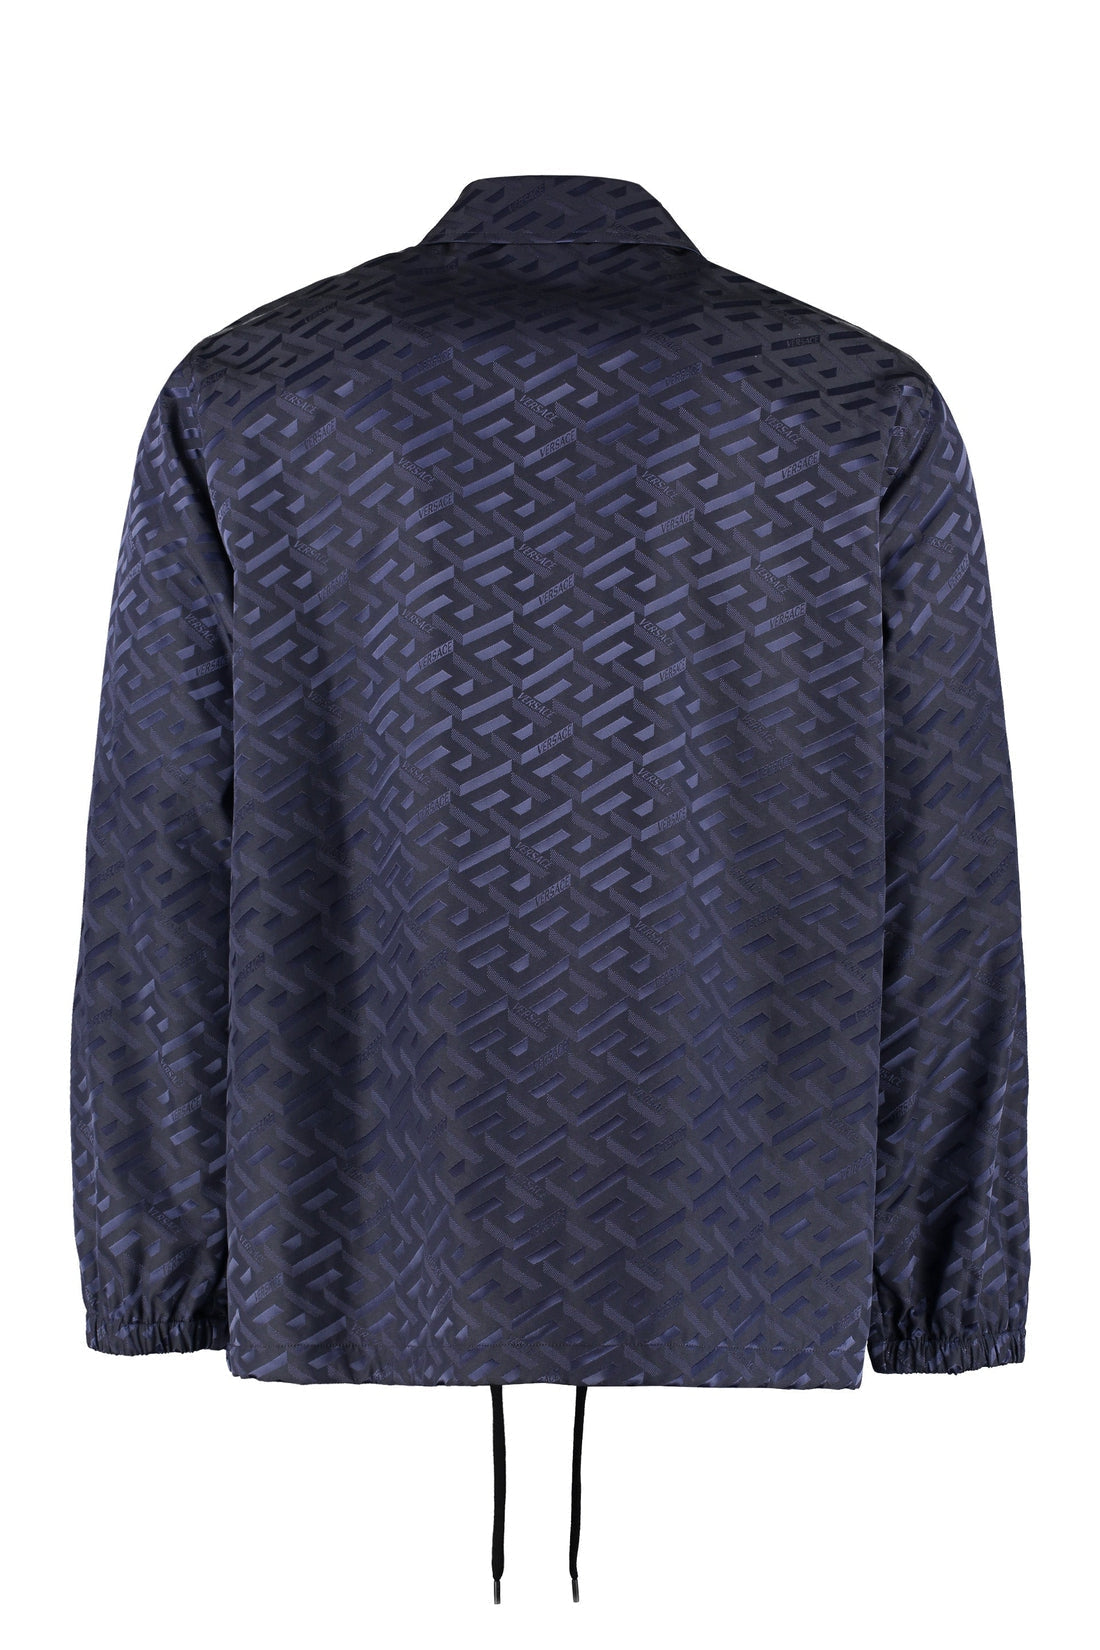 Versace-OUTLET-SALE-Technical fabric shirt-ARCHIVIST